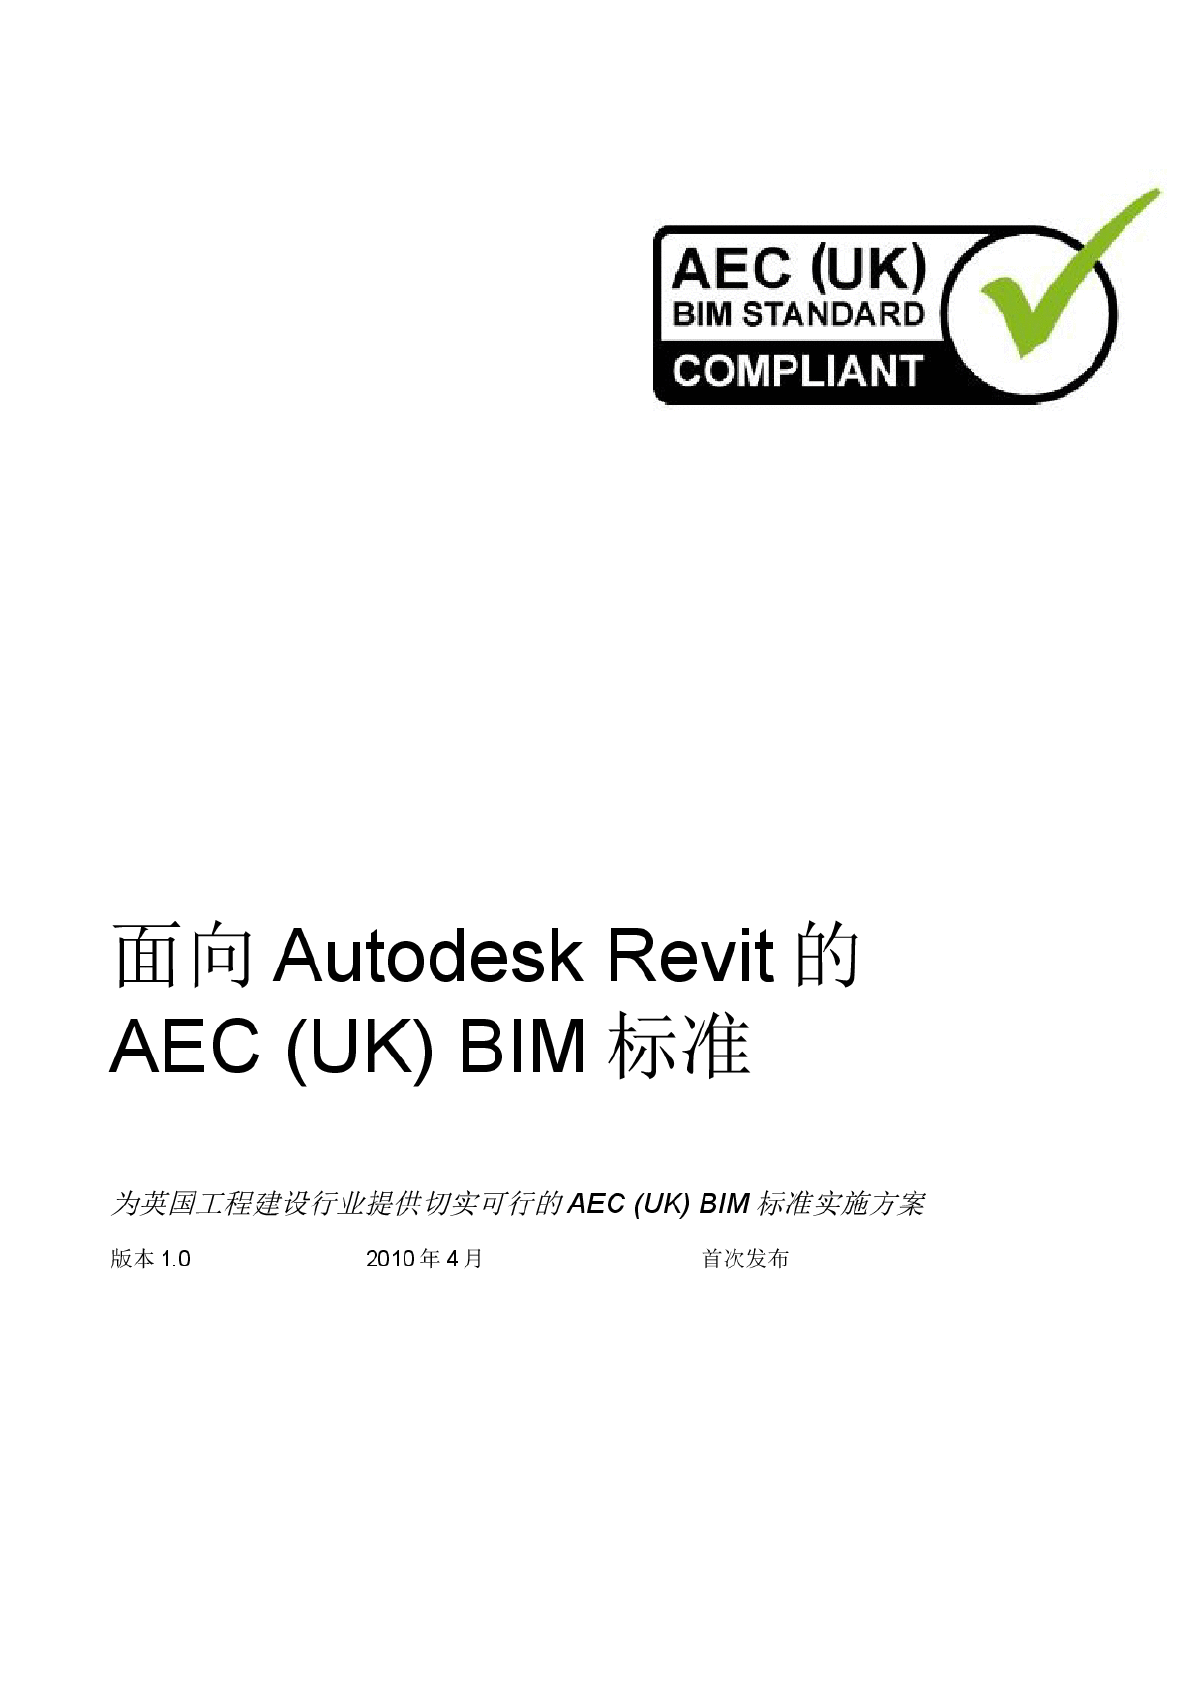 BIM标准化-中文版_AEC_(UK)_BIM_Standard_for_Autodesk_Revit_v1_0